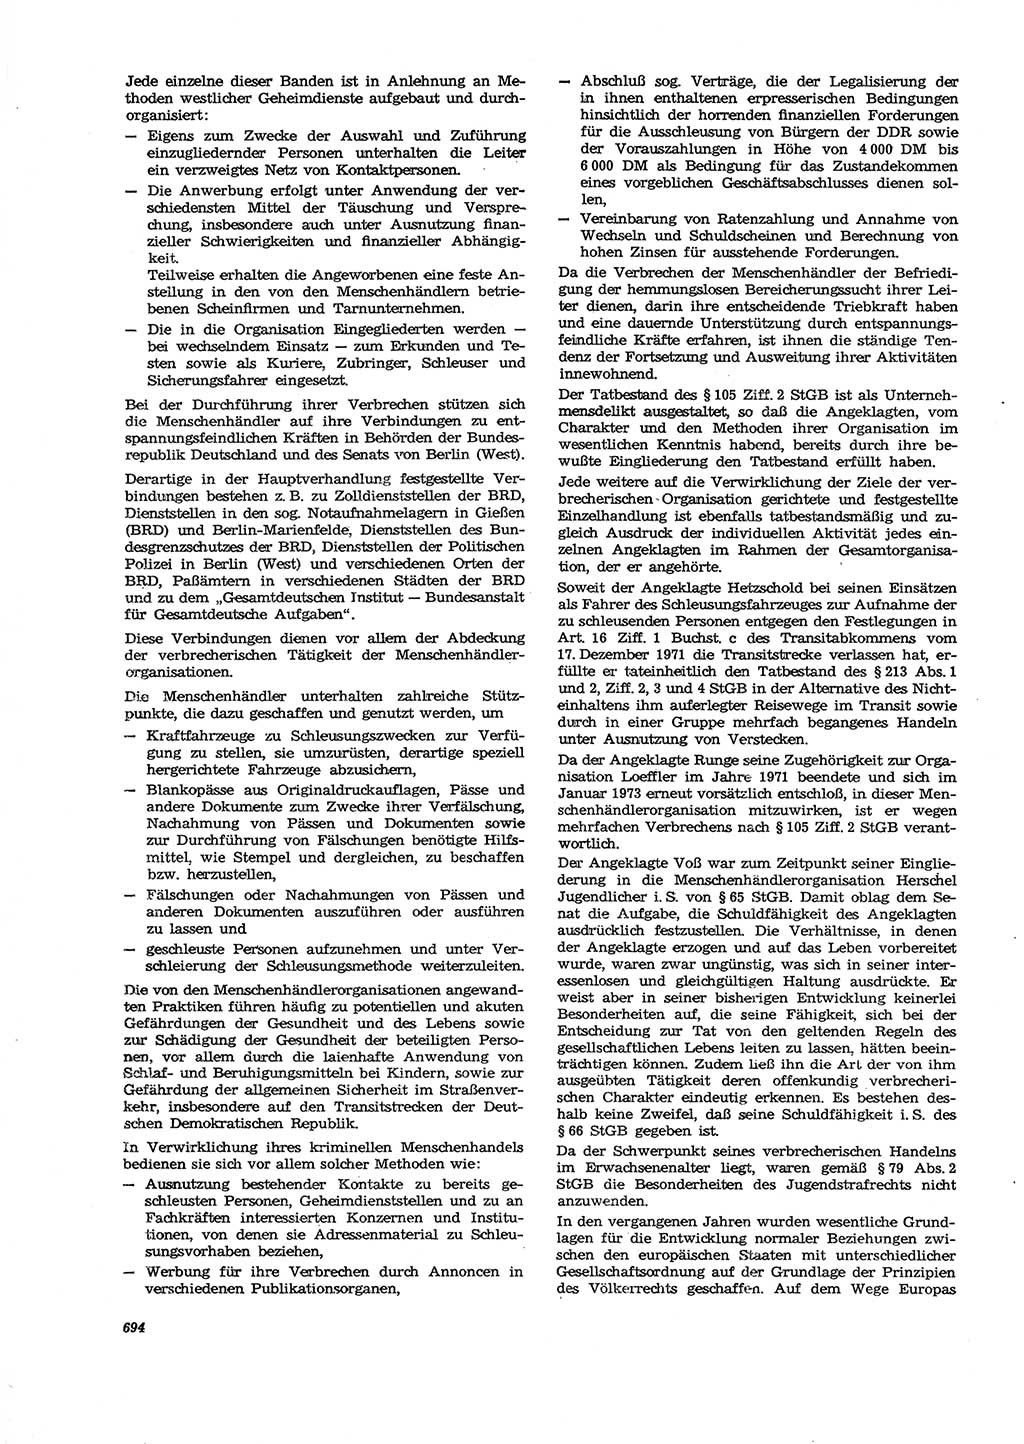 Neue Justiz (NJ), Zeitschrift für Recht und Rechtswissenschaft [Deutsche Demokratische Republik (DDR)], 27. Jahrgang 1973, Seite 694 (NJ DDR 1973, S. 694)